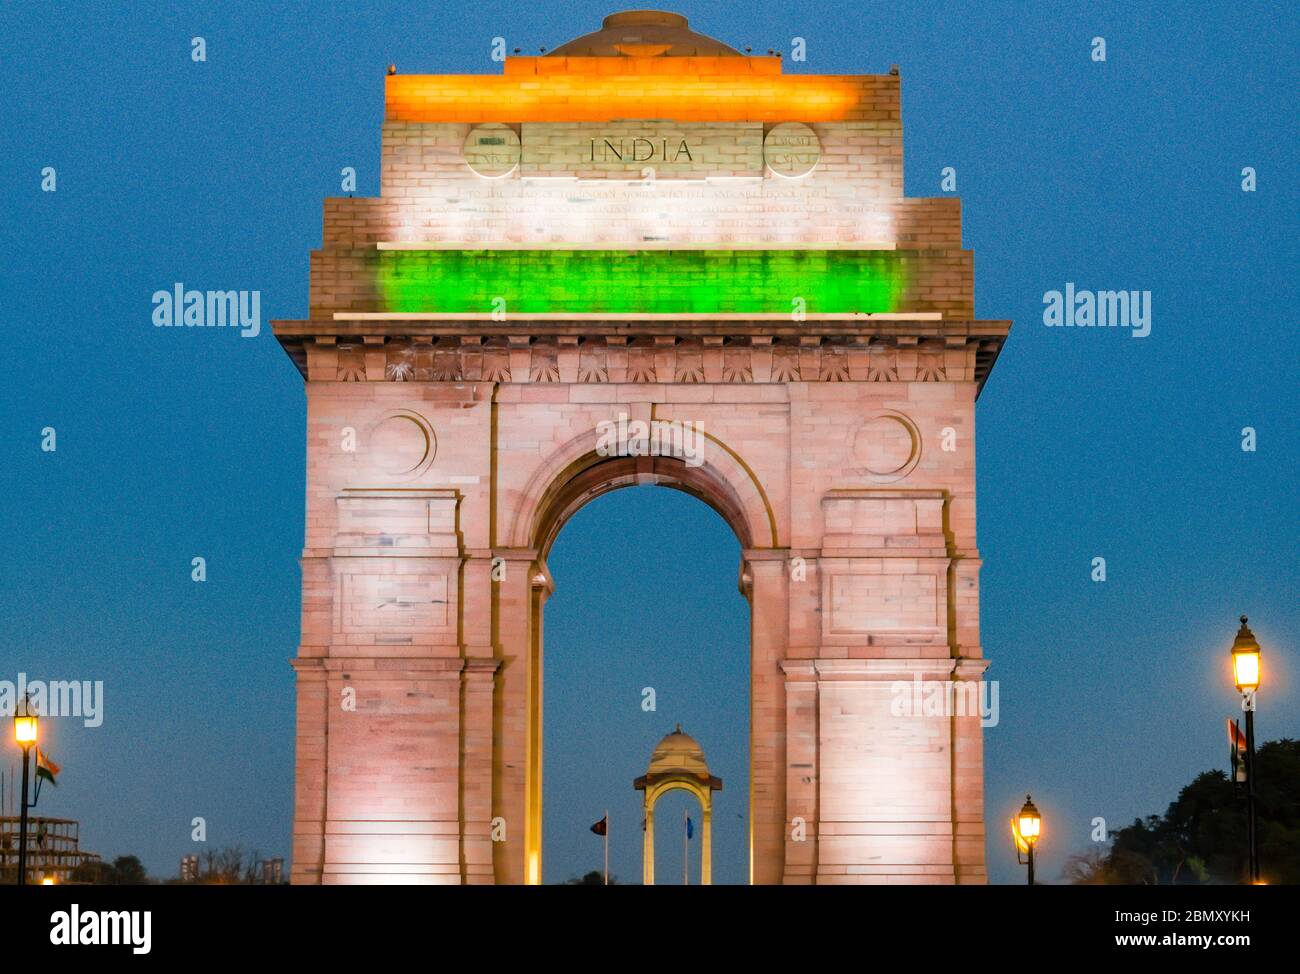 India Gate situato a Nuova Delhi, India - questo cancello è un monumento di guerra situato a cavallo del Rajpath. Il monumento turistico più famoso della capitale. Foto Stock